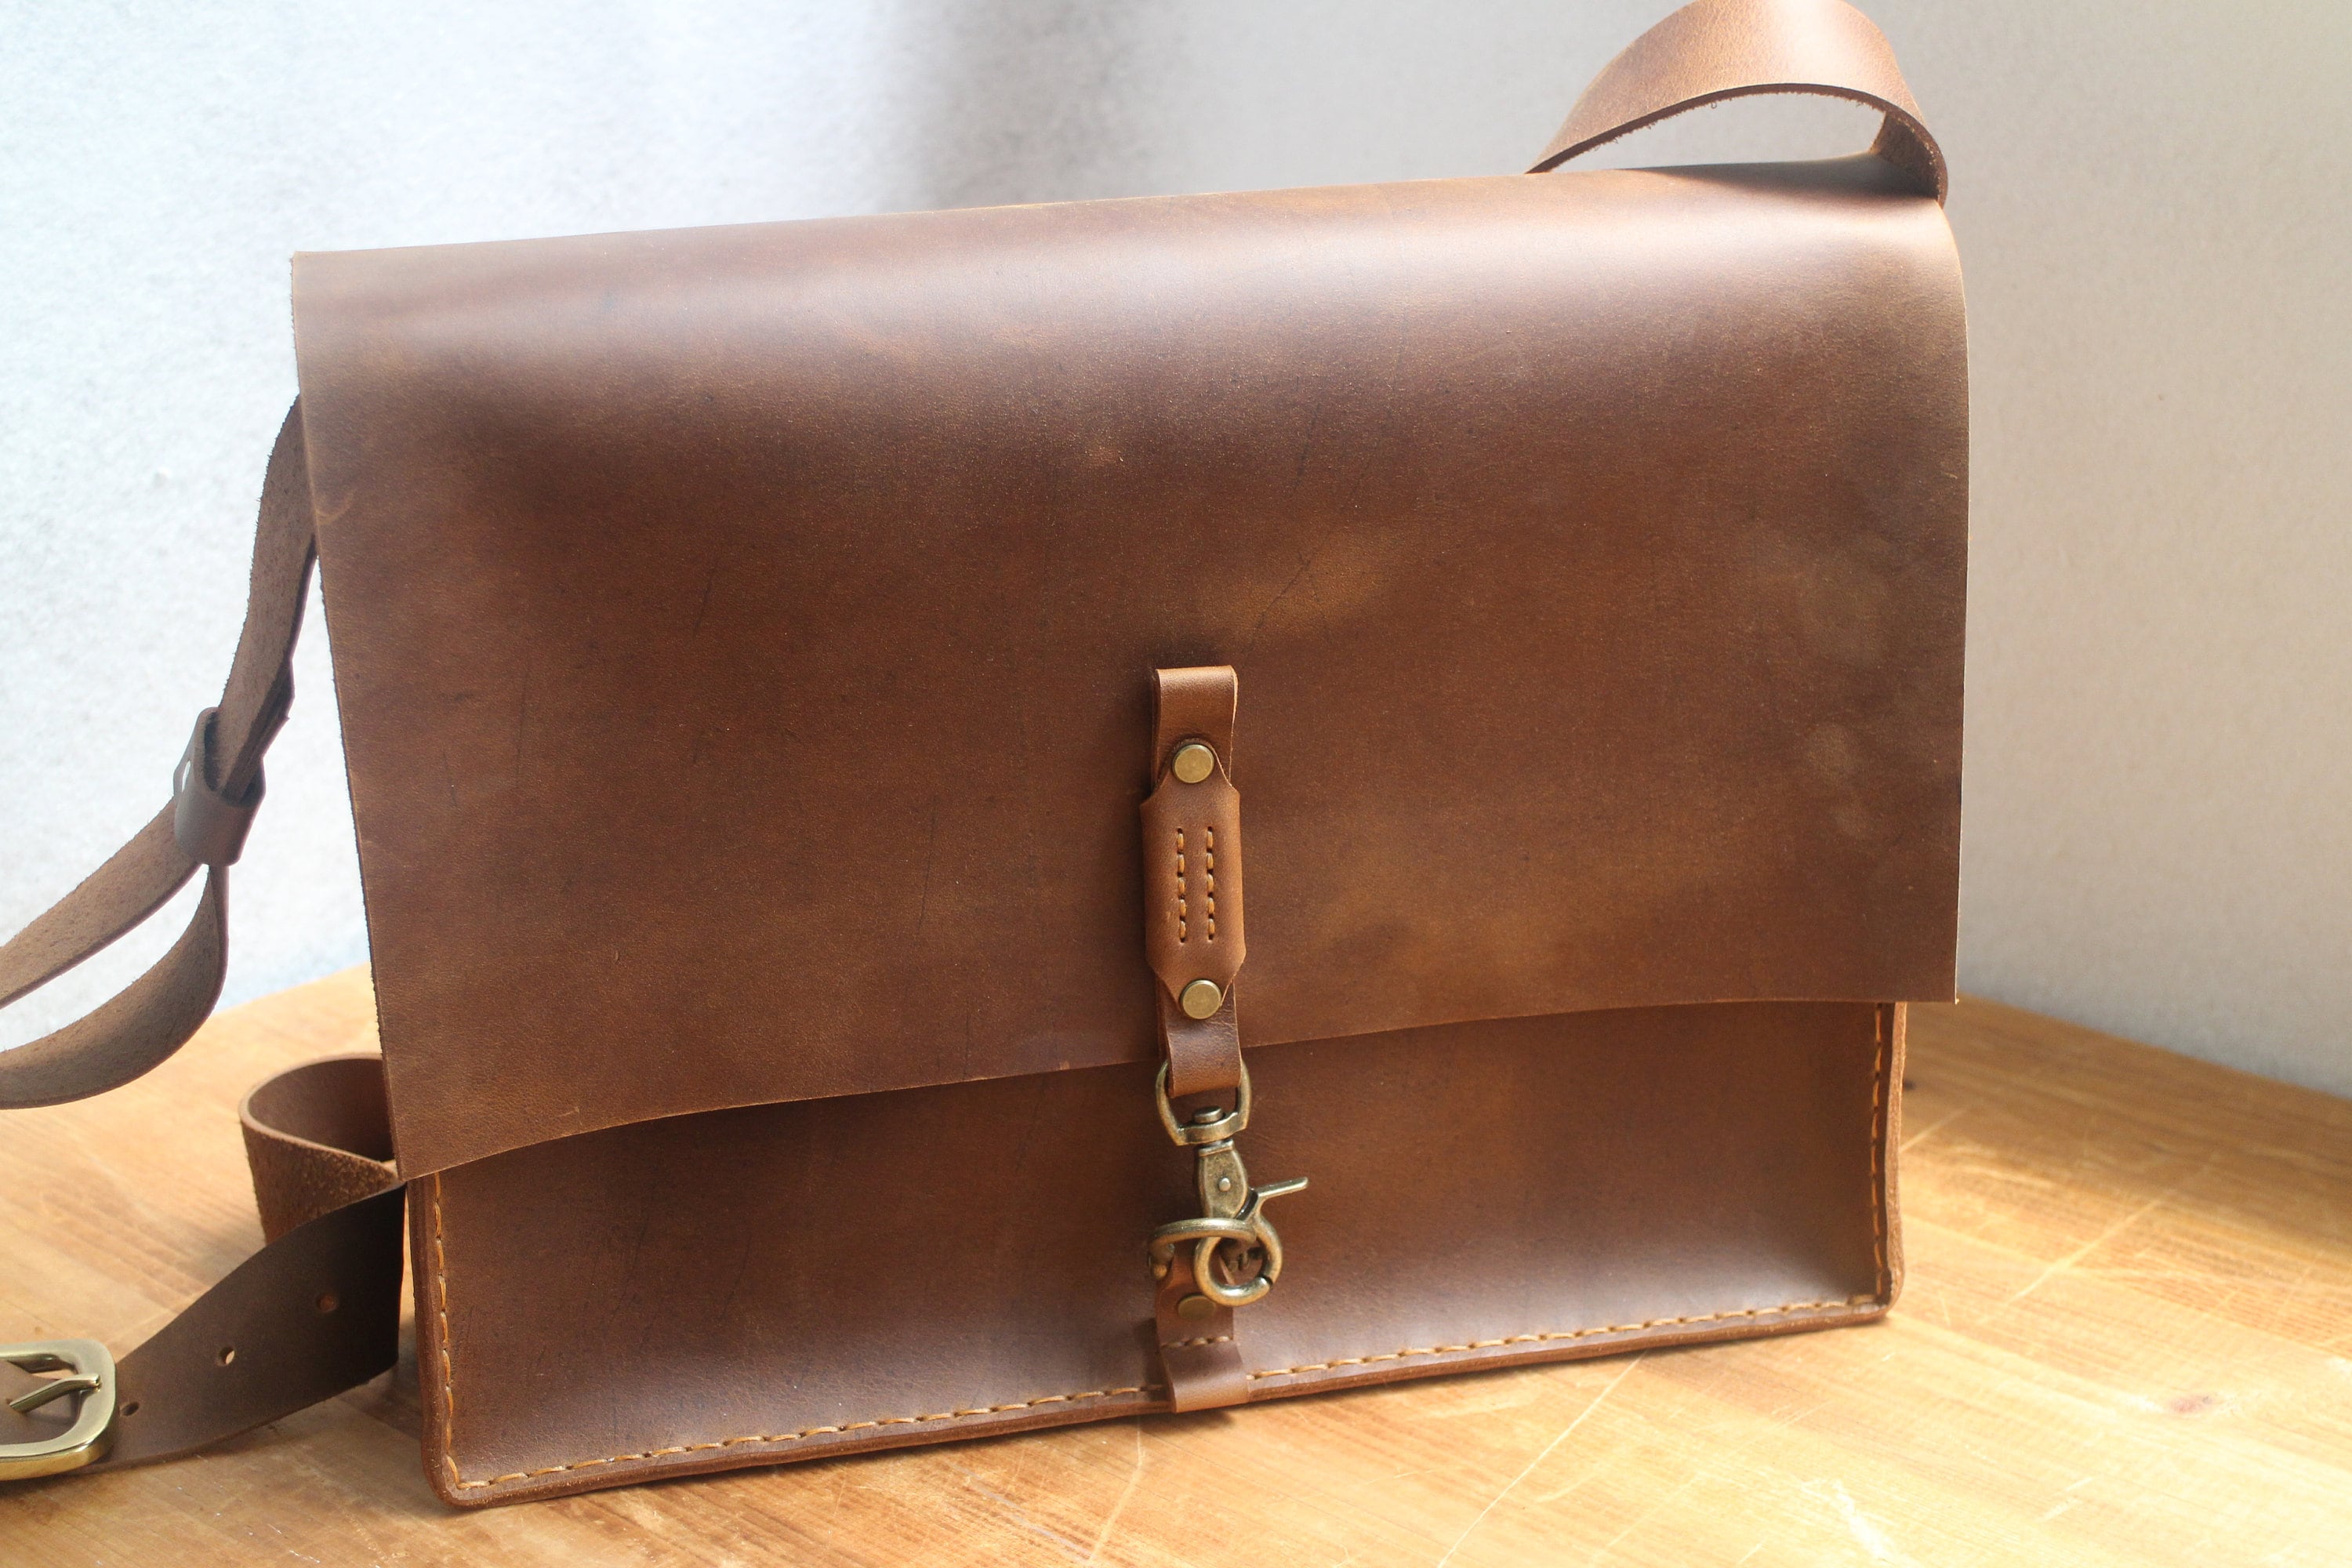 Leather messenger bag leather briefcase laptop bag | Etsy